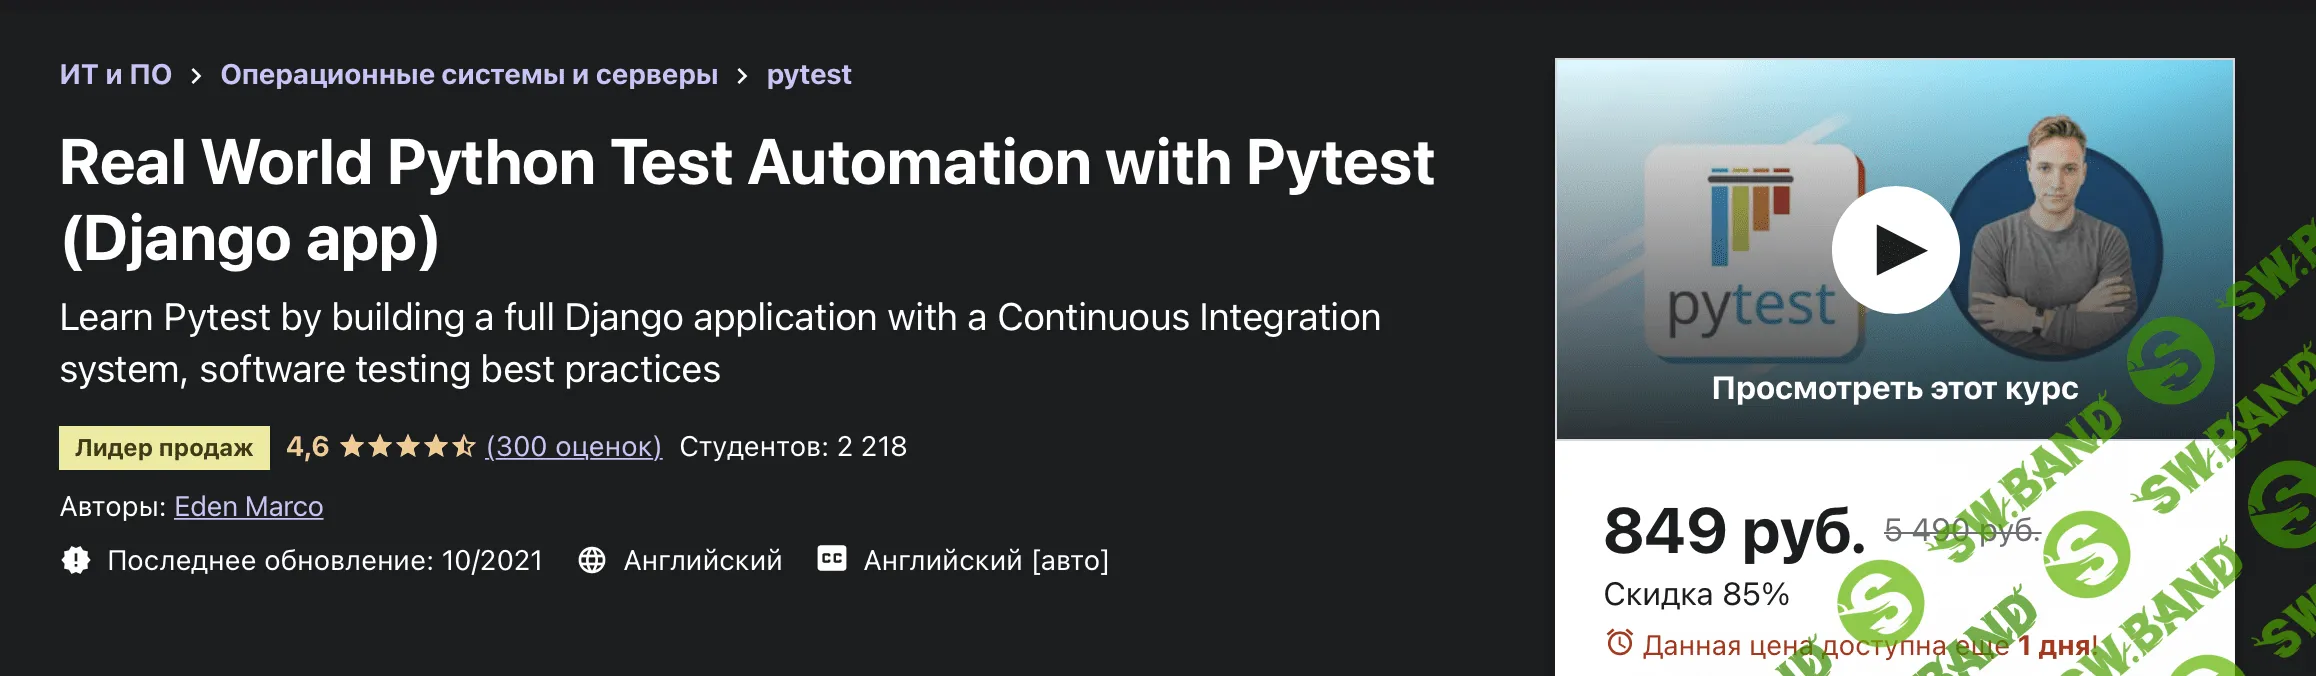 [Udemy] Автоматизация тестирования Python в реальном мире с помощью Pytest (2021)